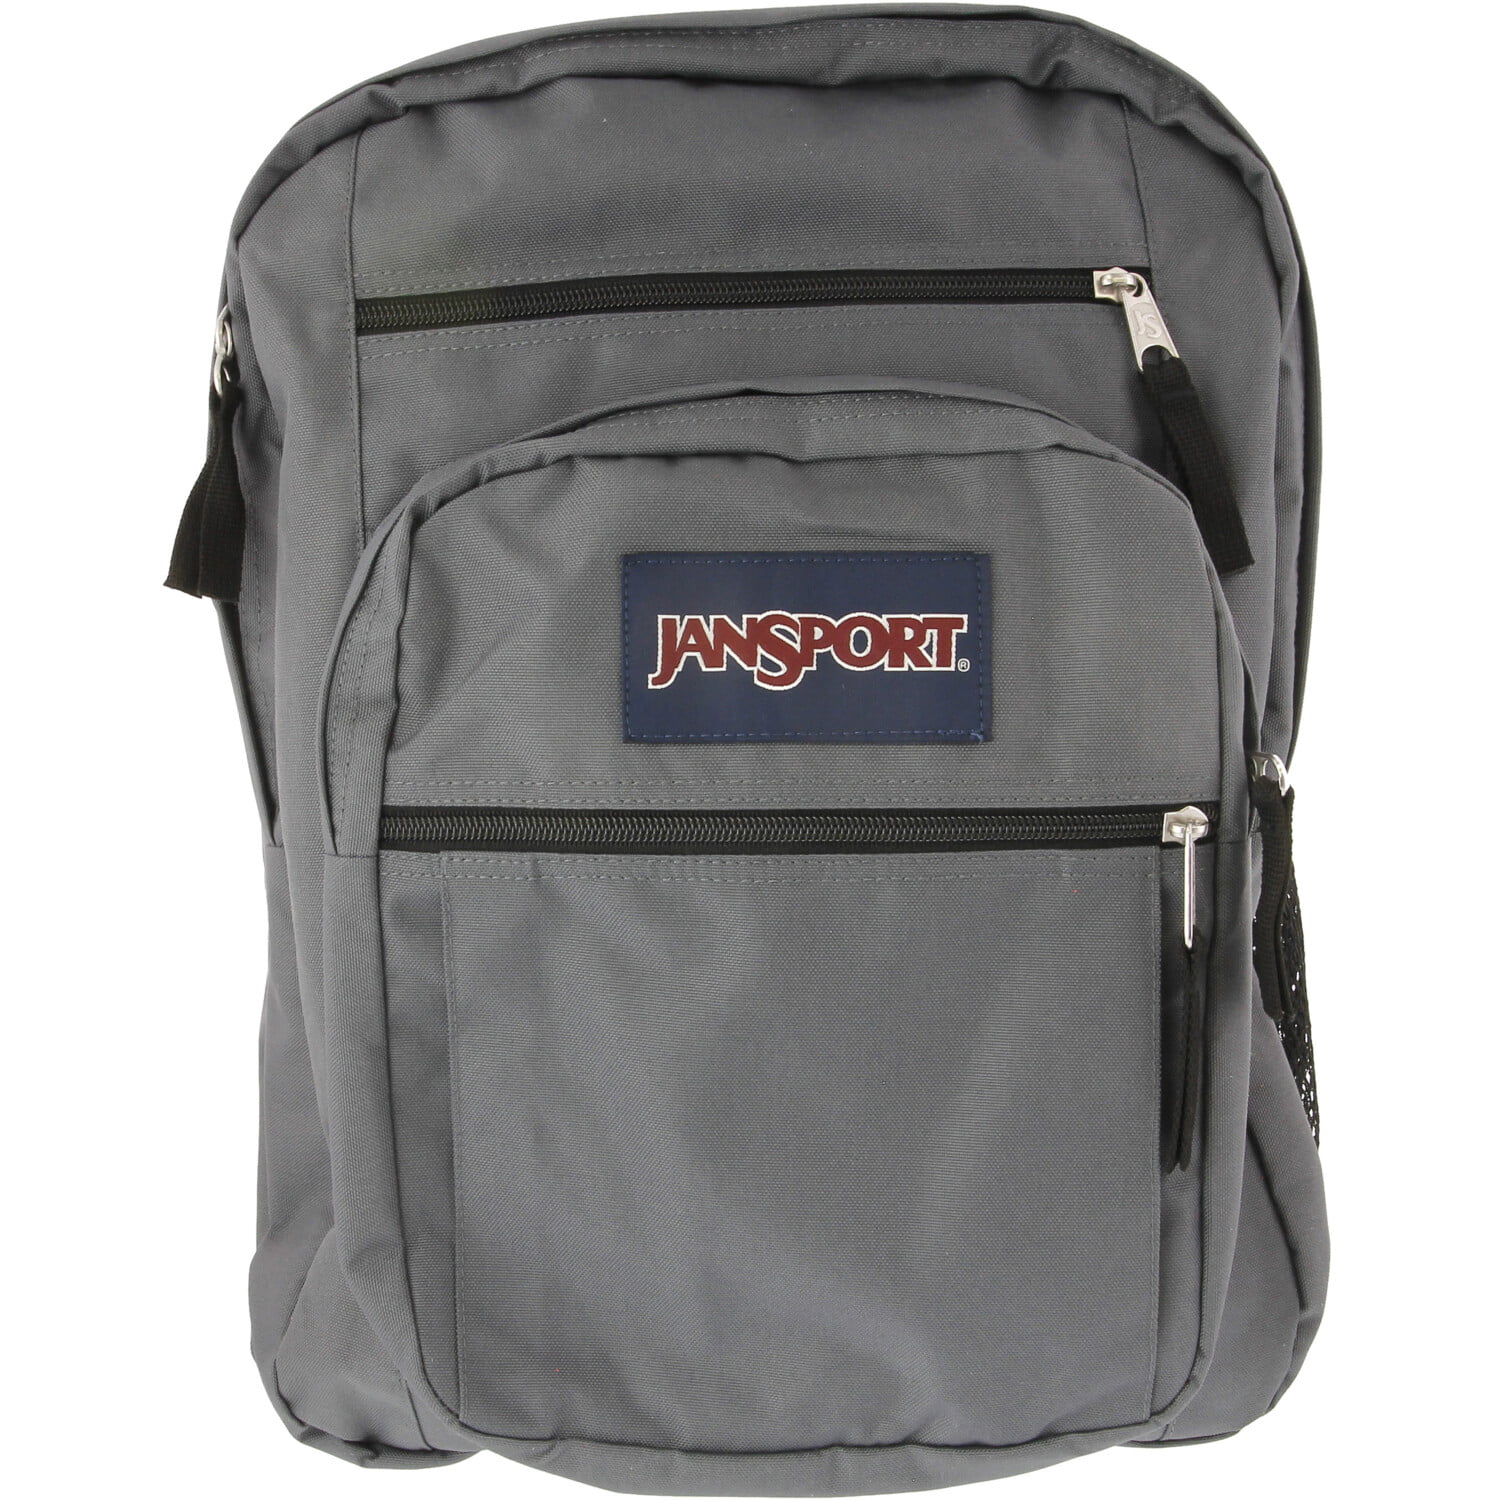 jansport backpack sale walmart